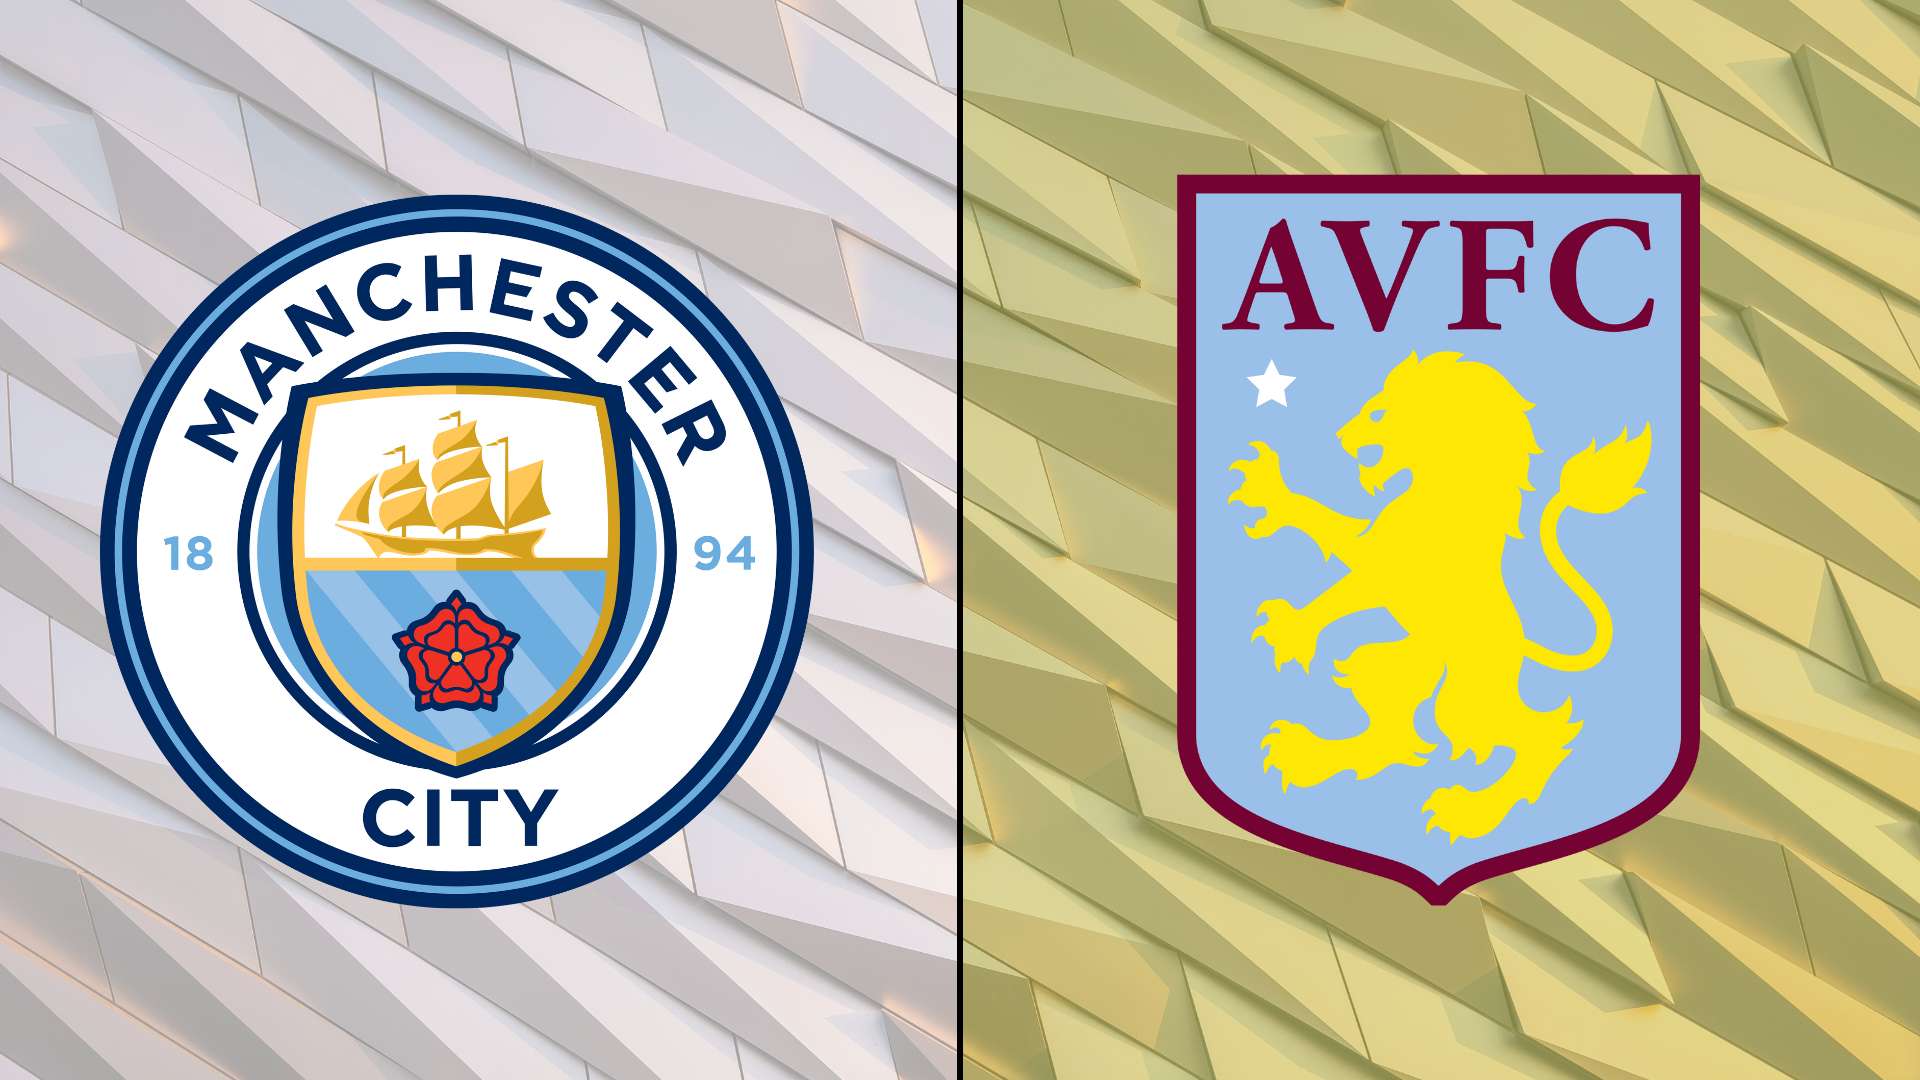 Man City vs Aston Villa